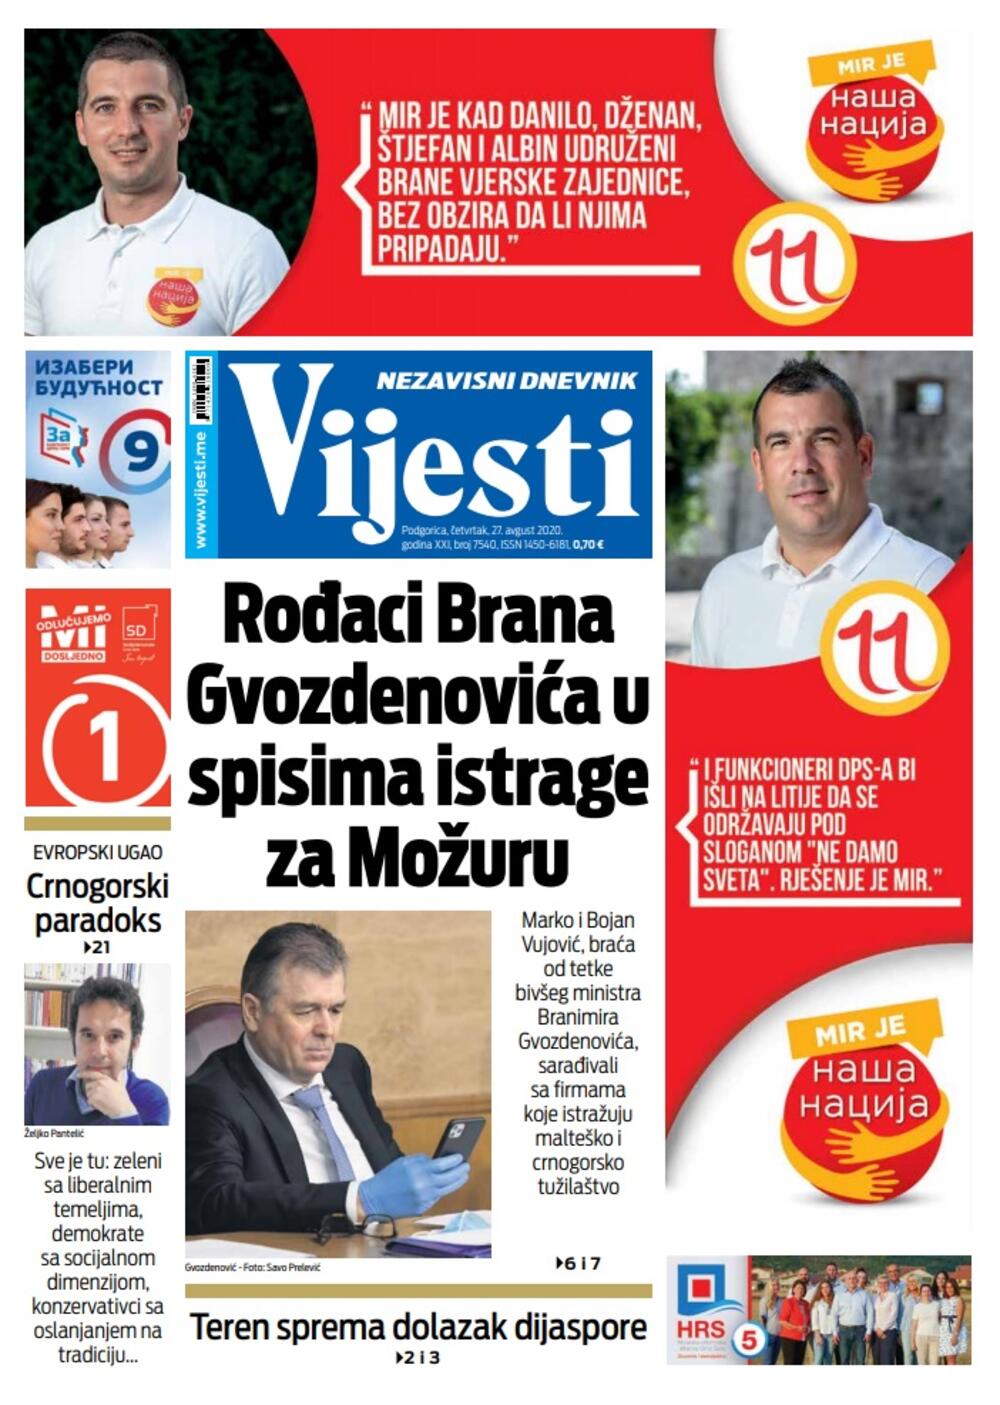 Naslovna strana "Vijesti" za četvrtak  27. avgust 2020. godine, Foto: Vijesti